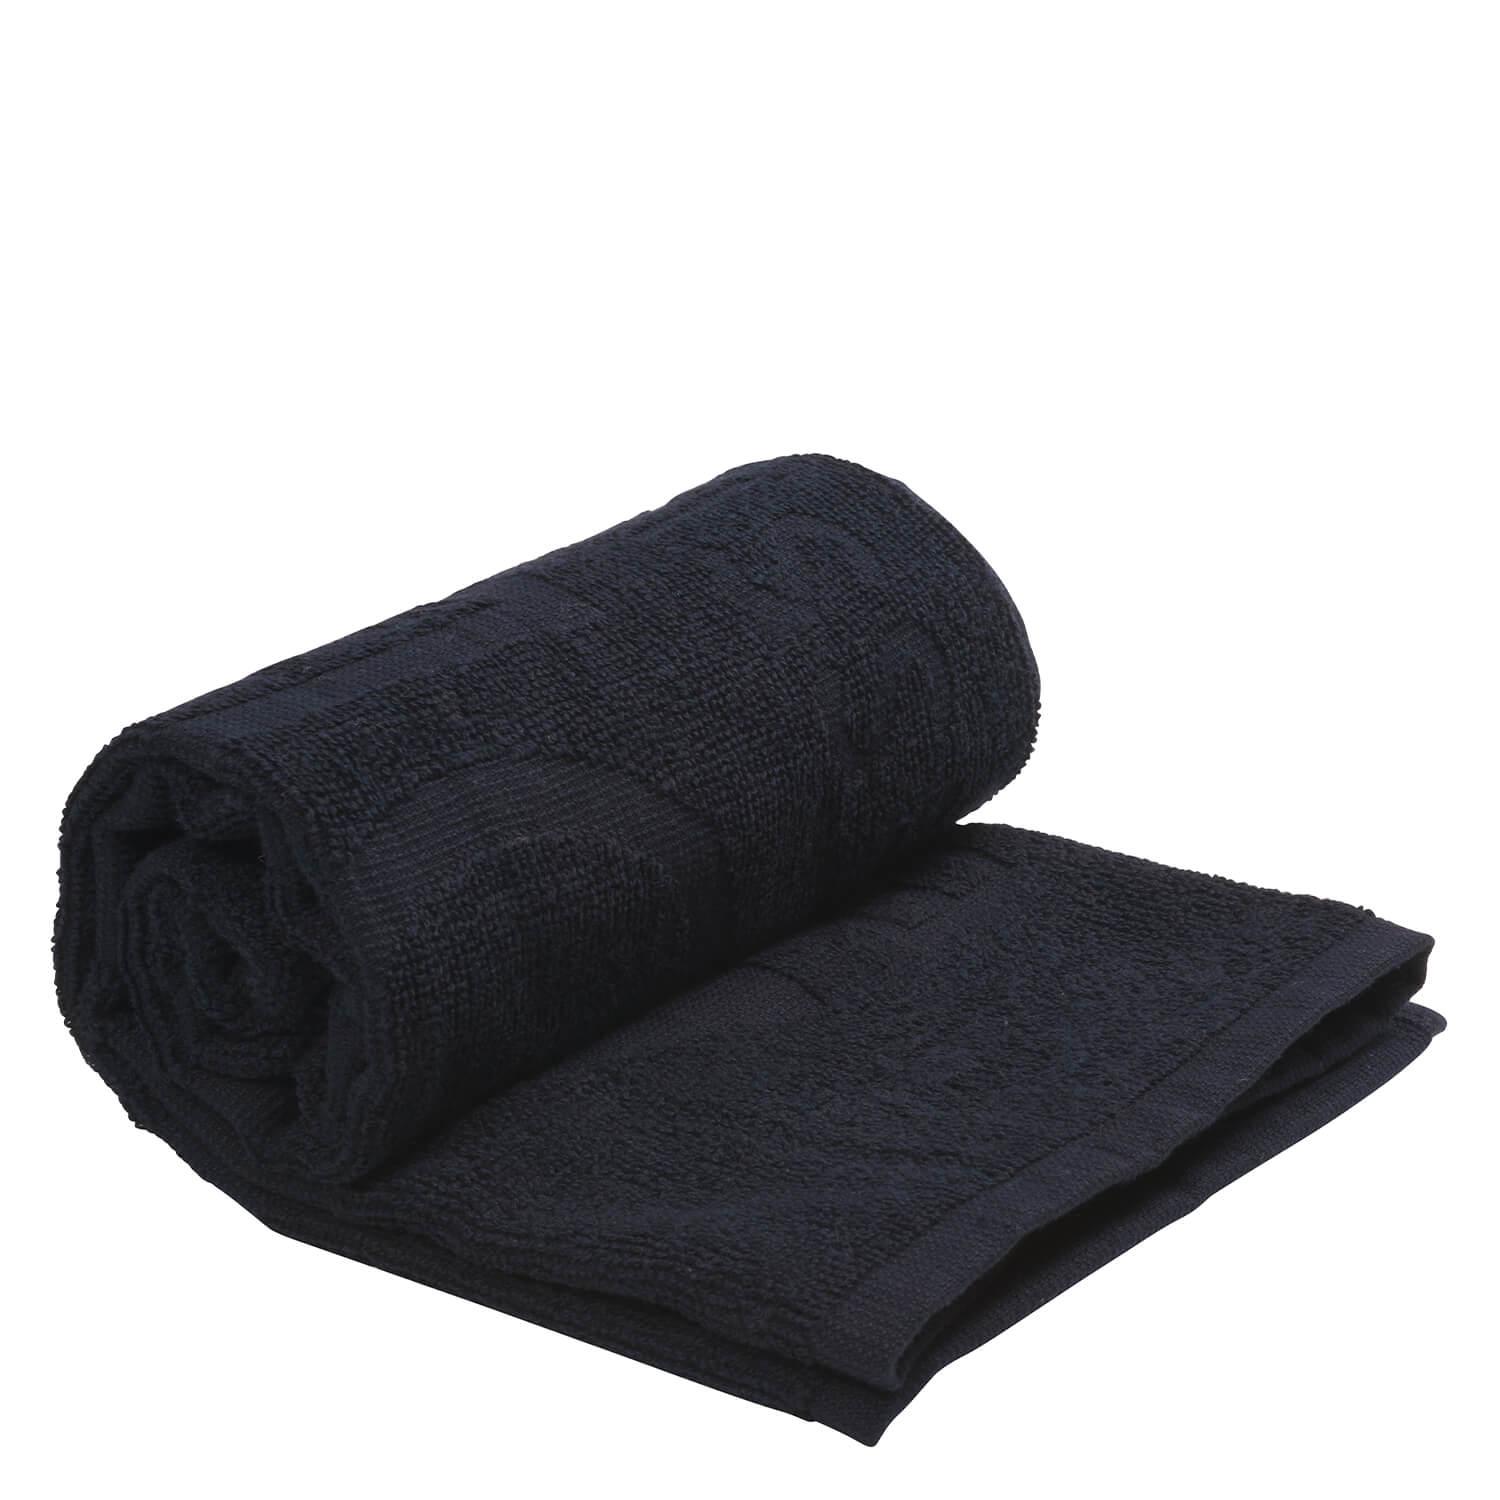 Salon Tools - Towels black